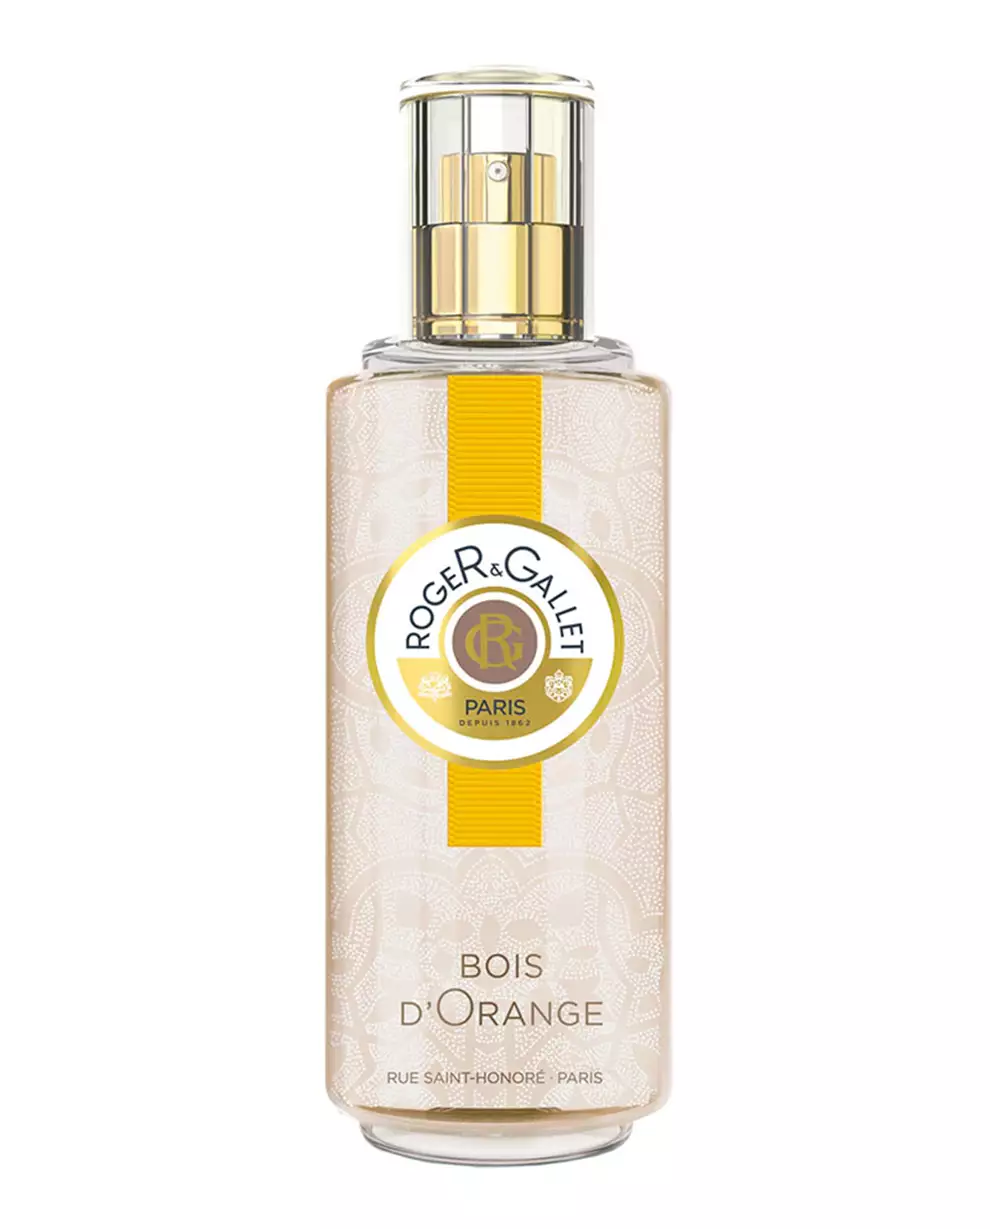  Perfumes de mujer delicados Bois dOrange de Roger Gallet